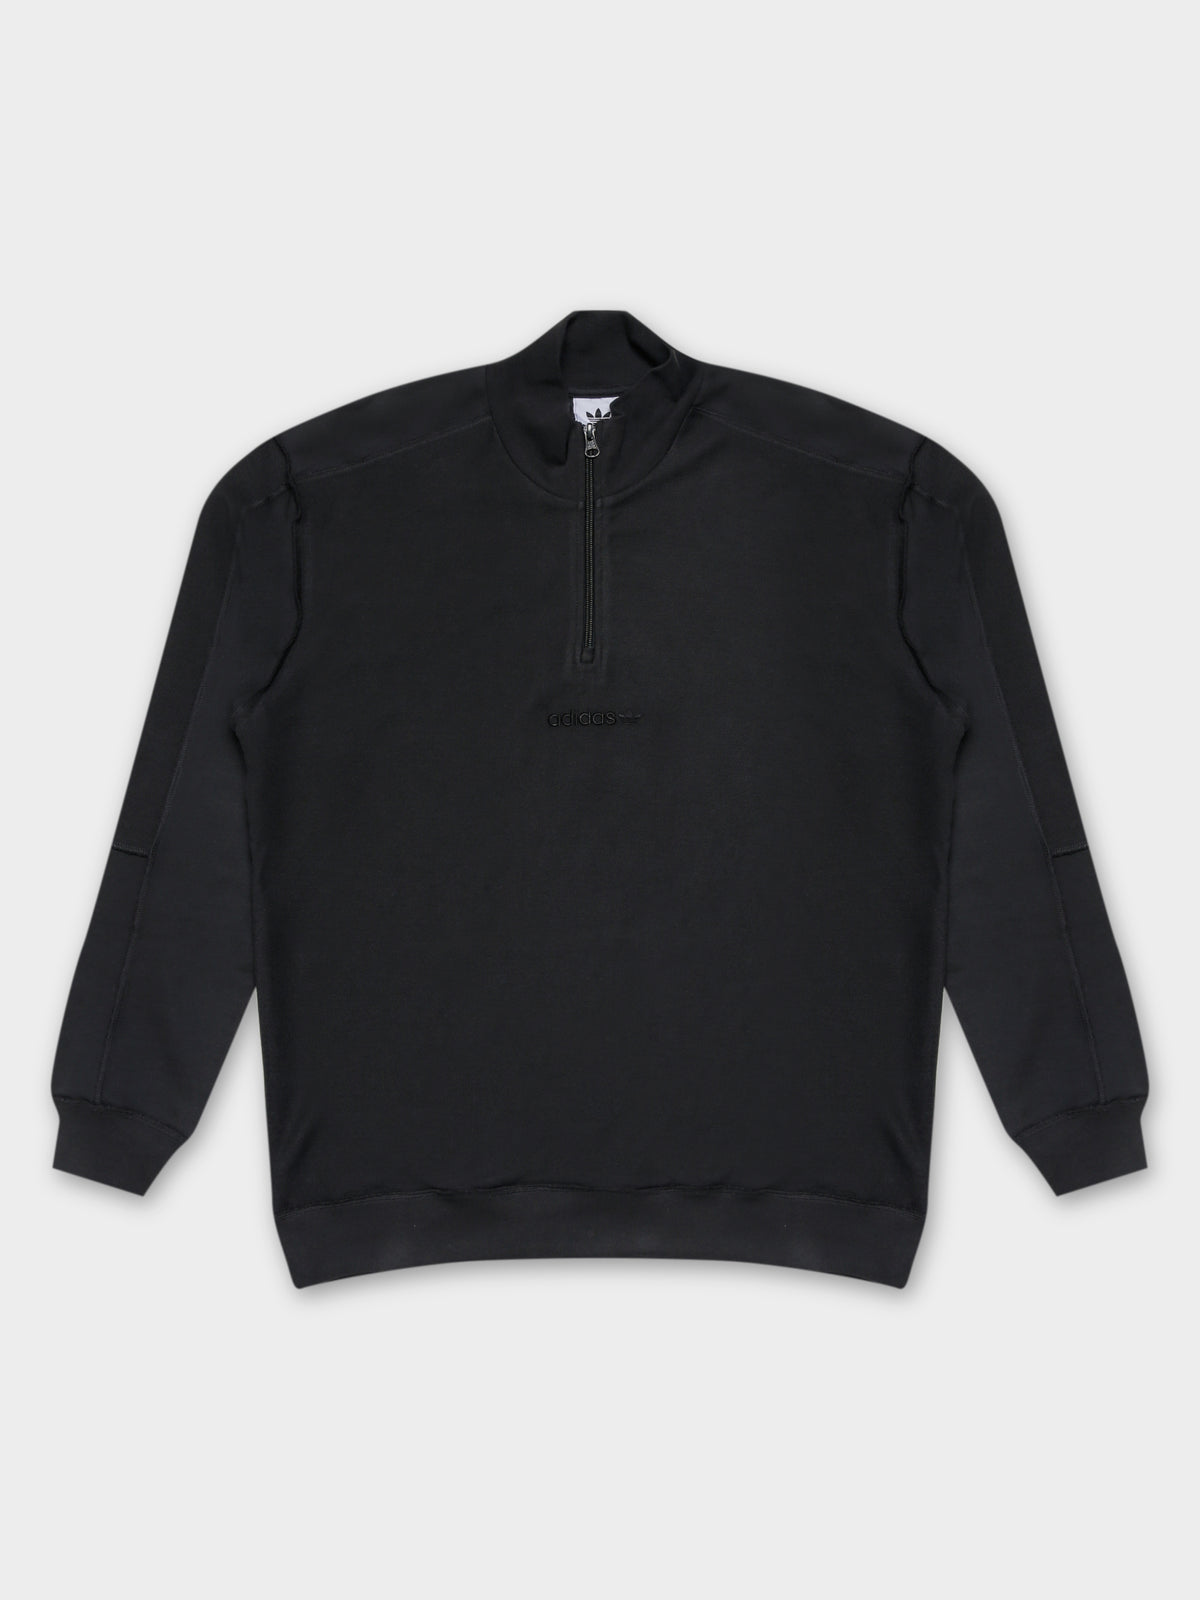 Loopback Quarter Zip Sweatshirt in Black